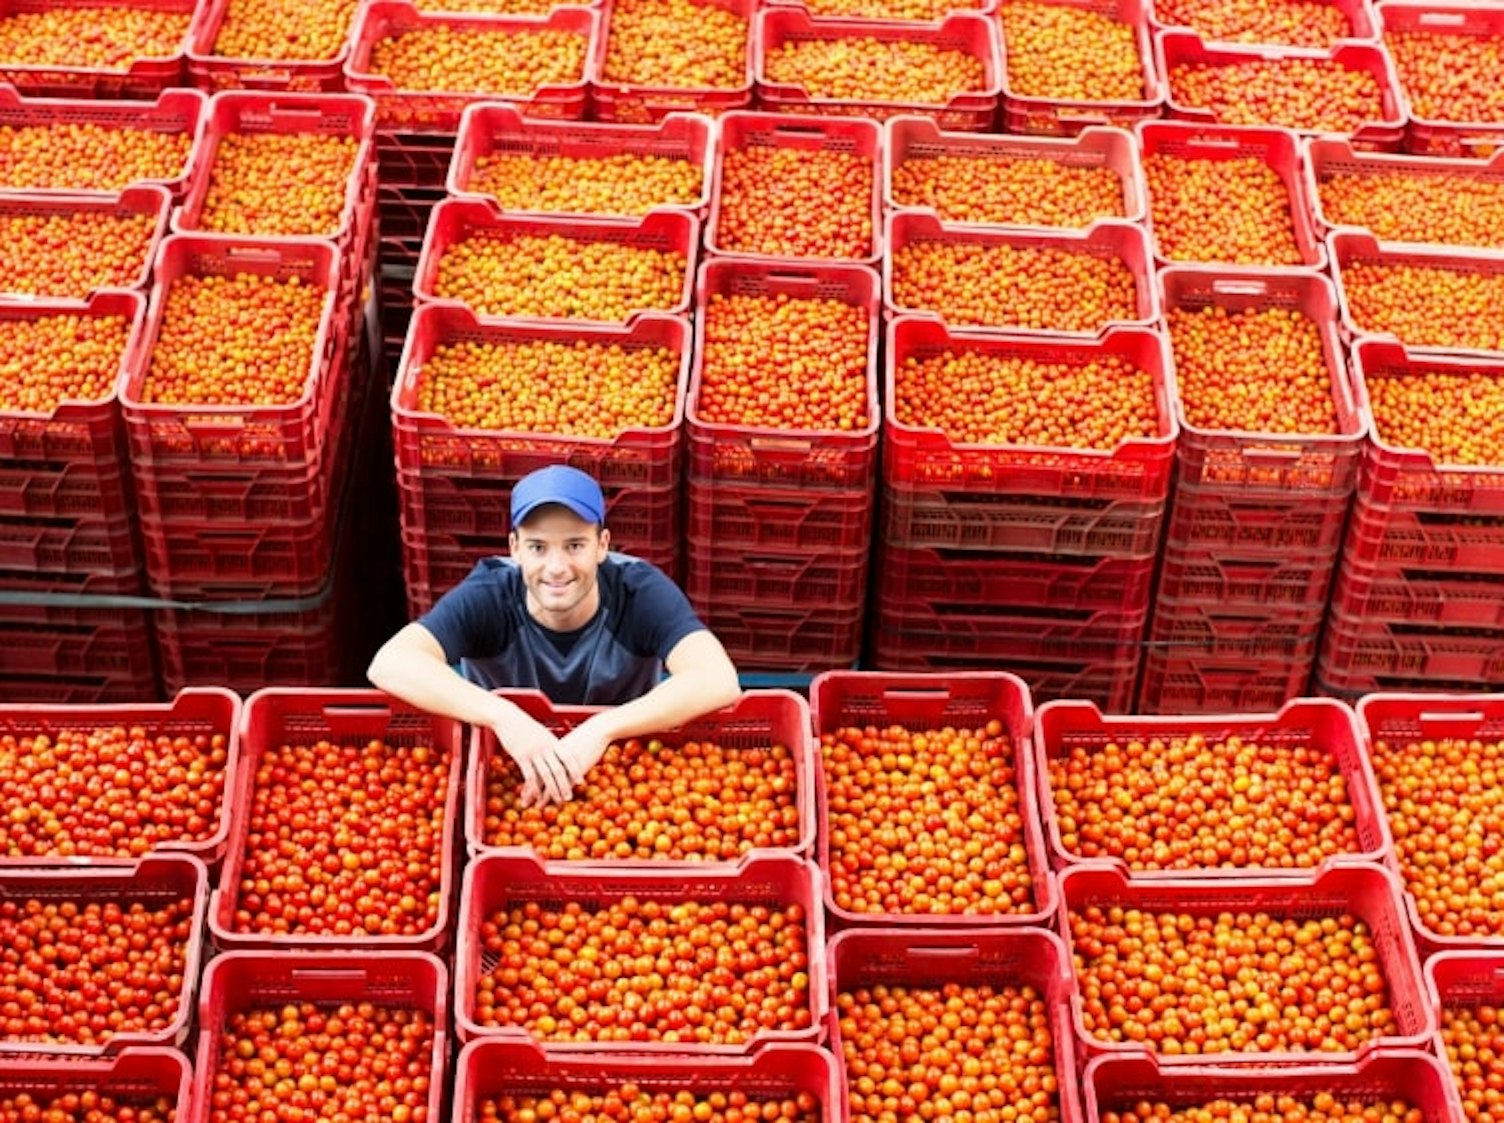 Farmer Standing among Tomato Crates